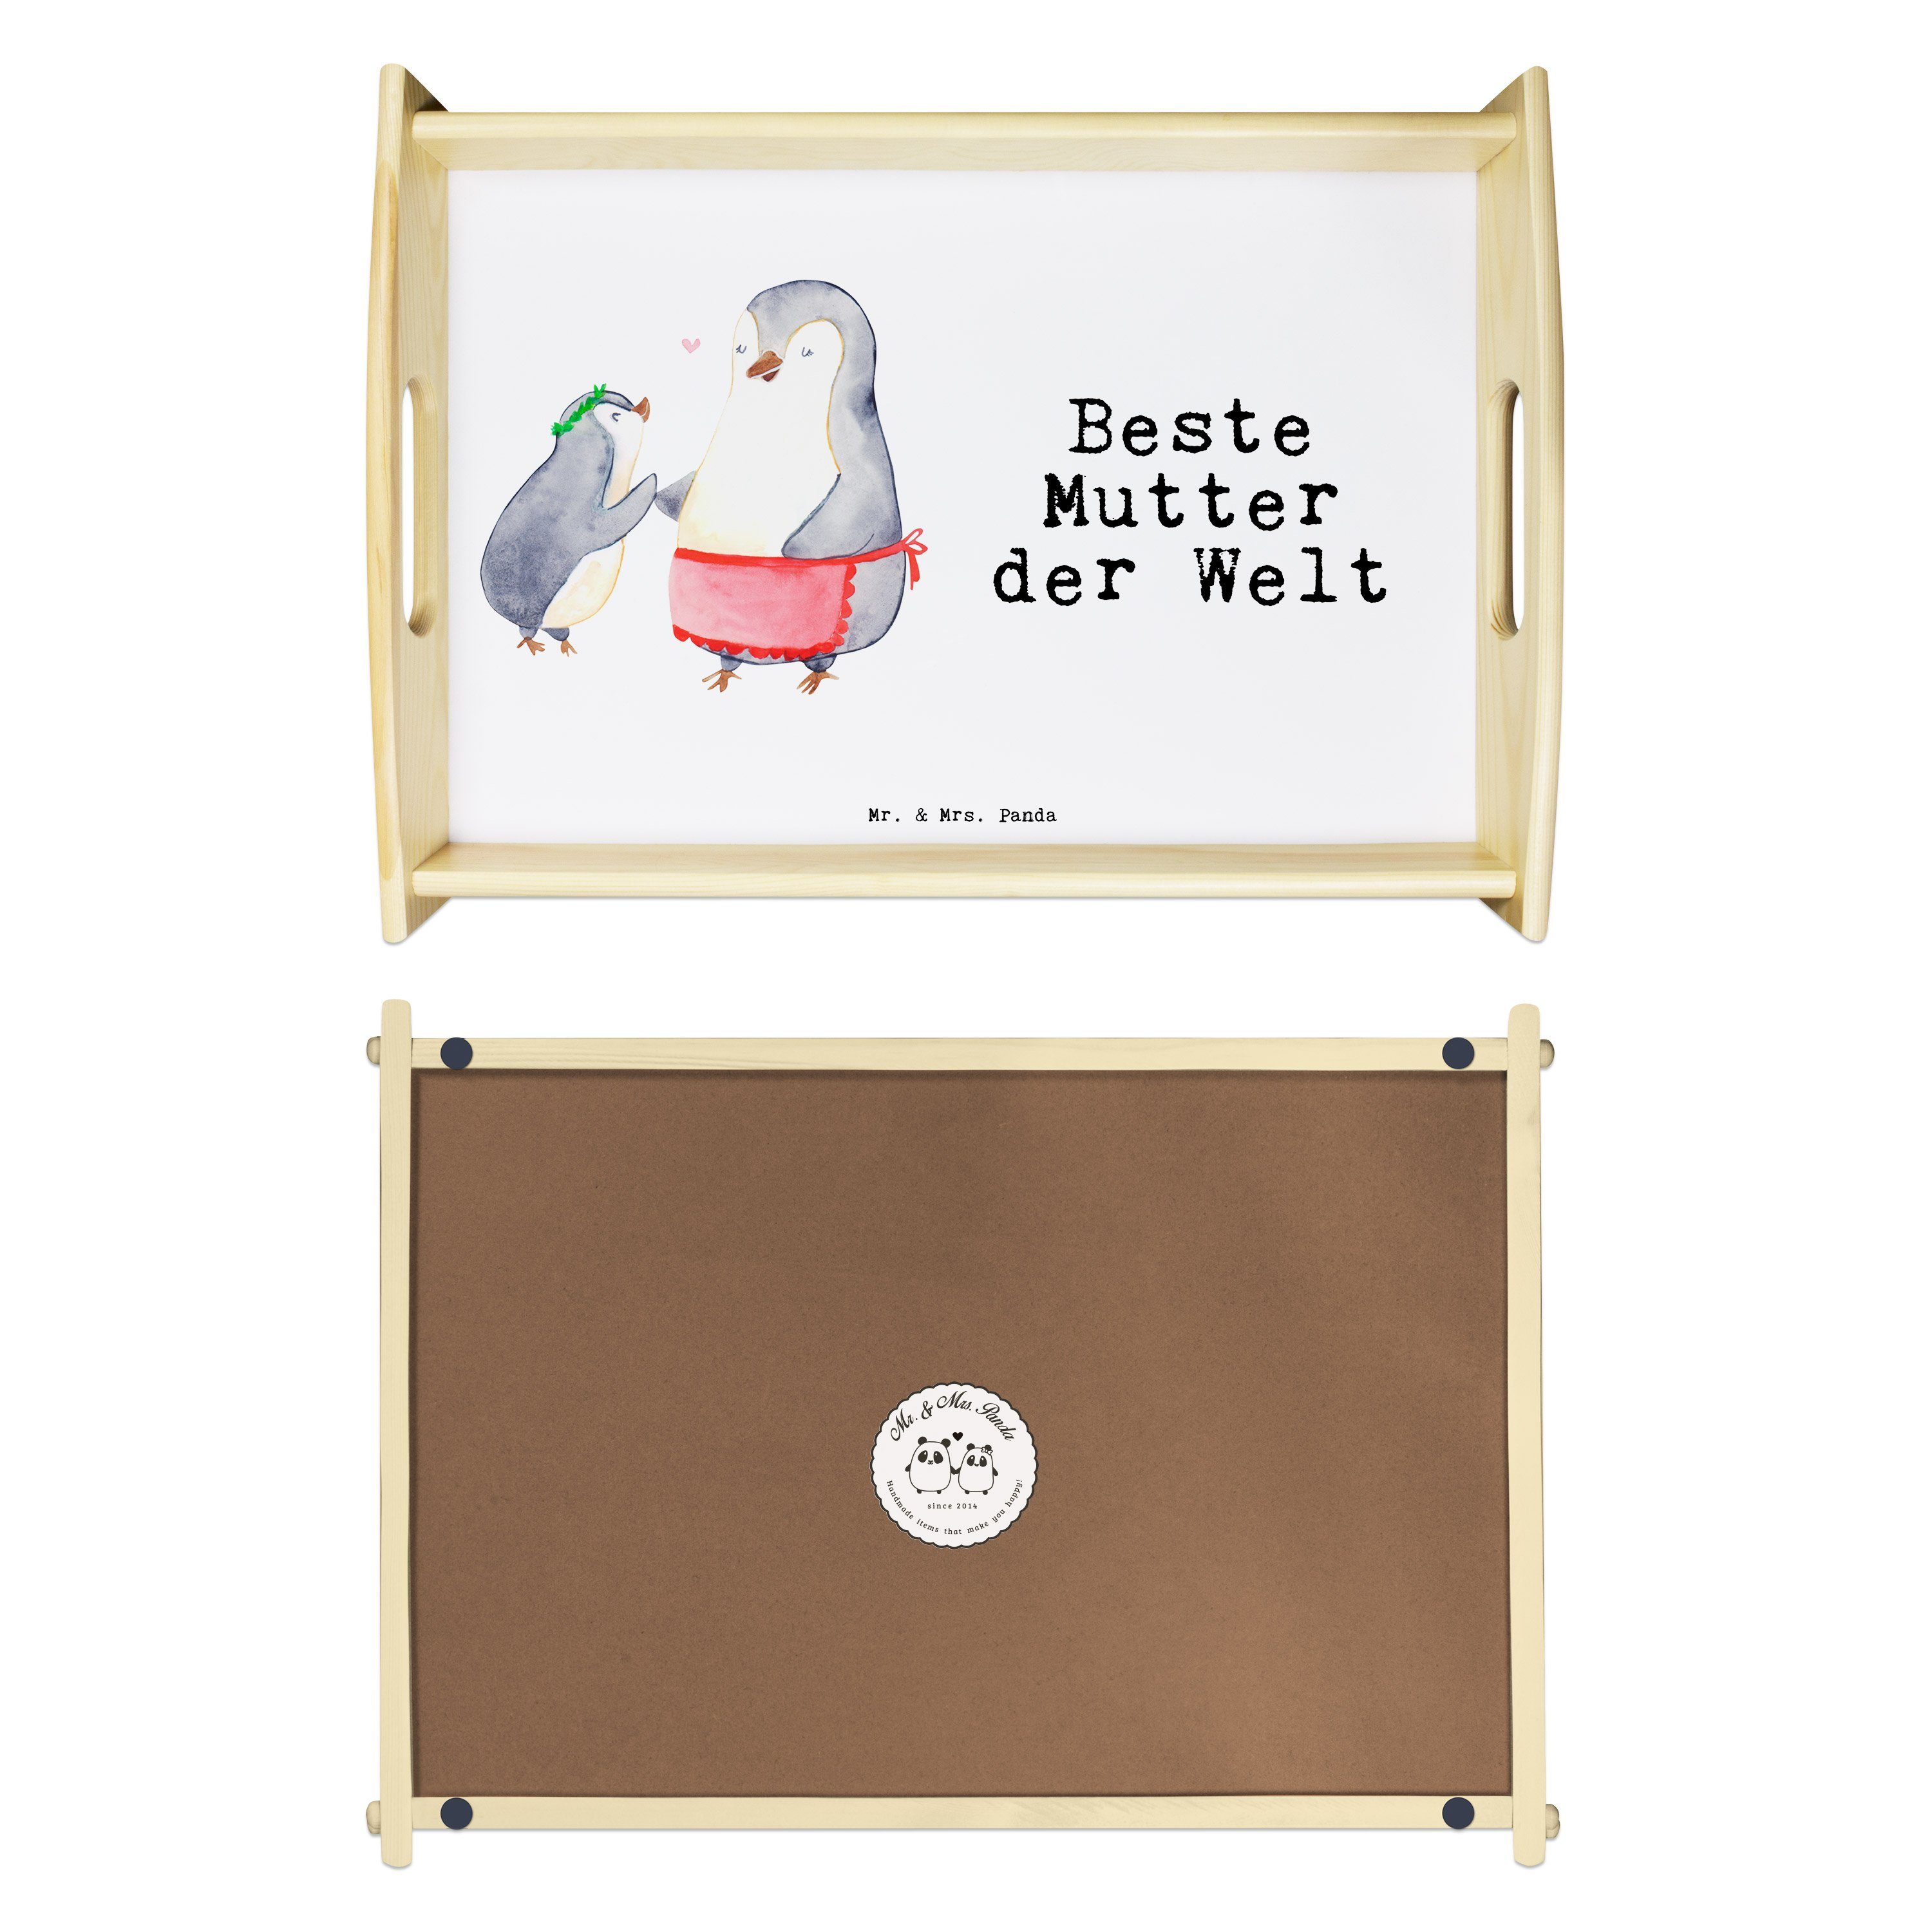 Mr. & Mrs. Panda Pinguin Dekotablett, Beste Mutter Echtholz Weiß Tablett, Geschenk, lasiert, (1-tlg) - der Welt Tablett 